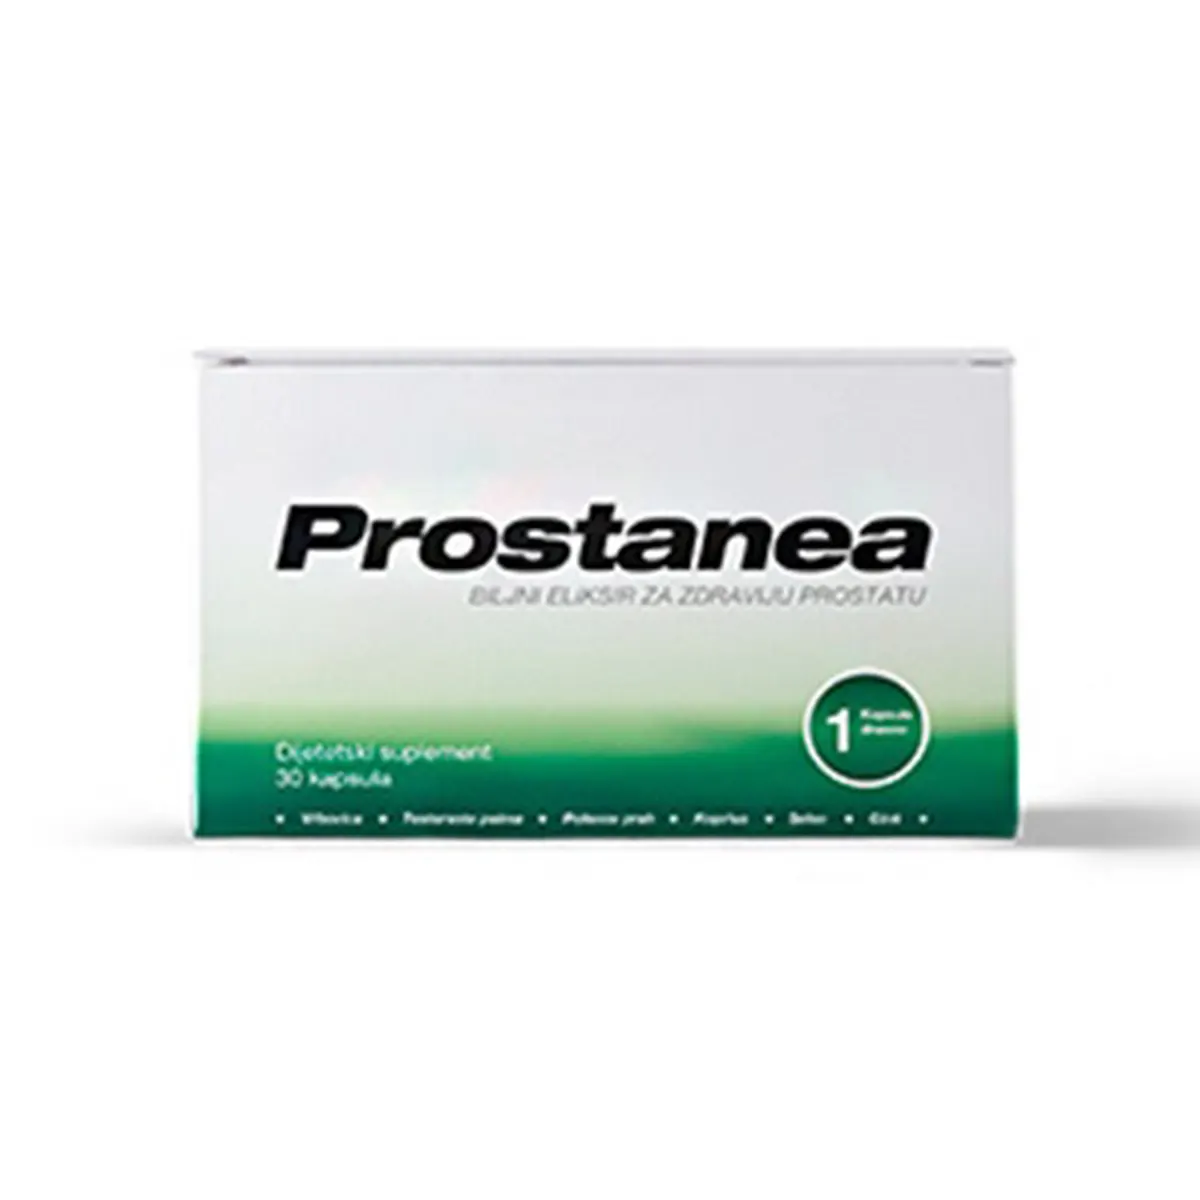 Prostanea biljni eliksir za zdraviju prostatu